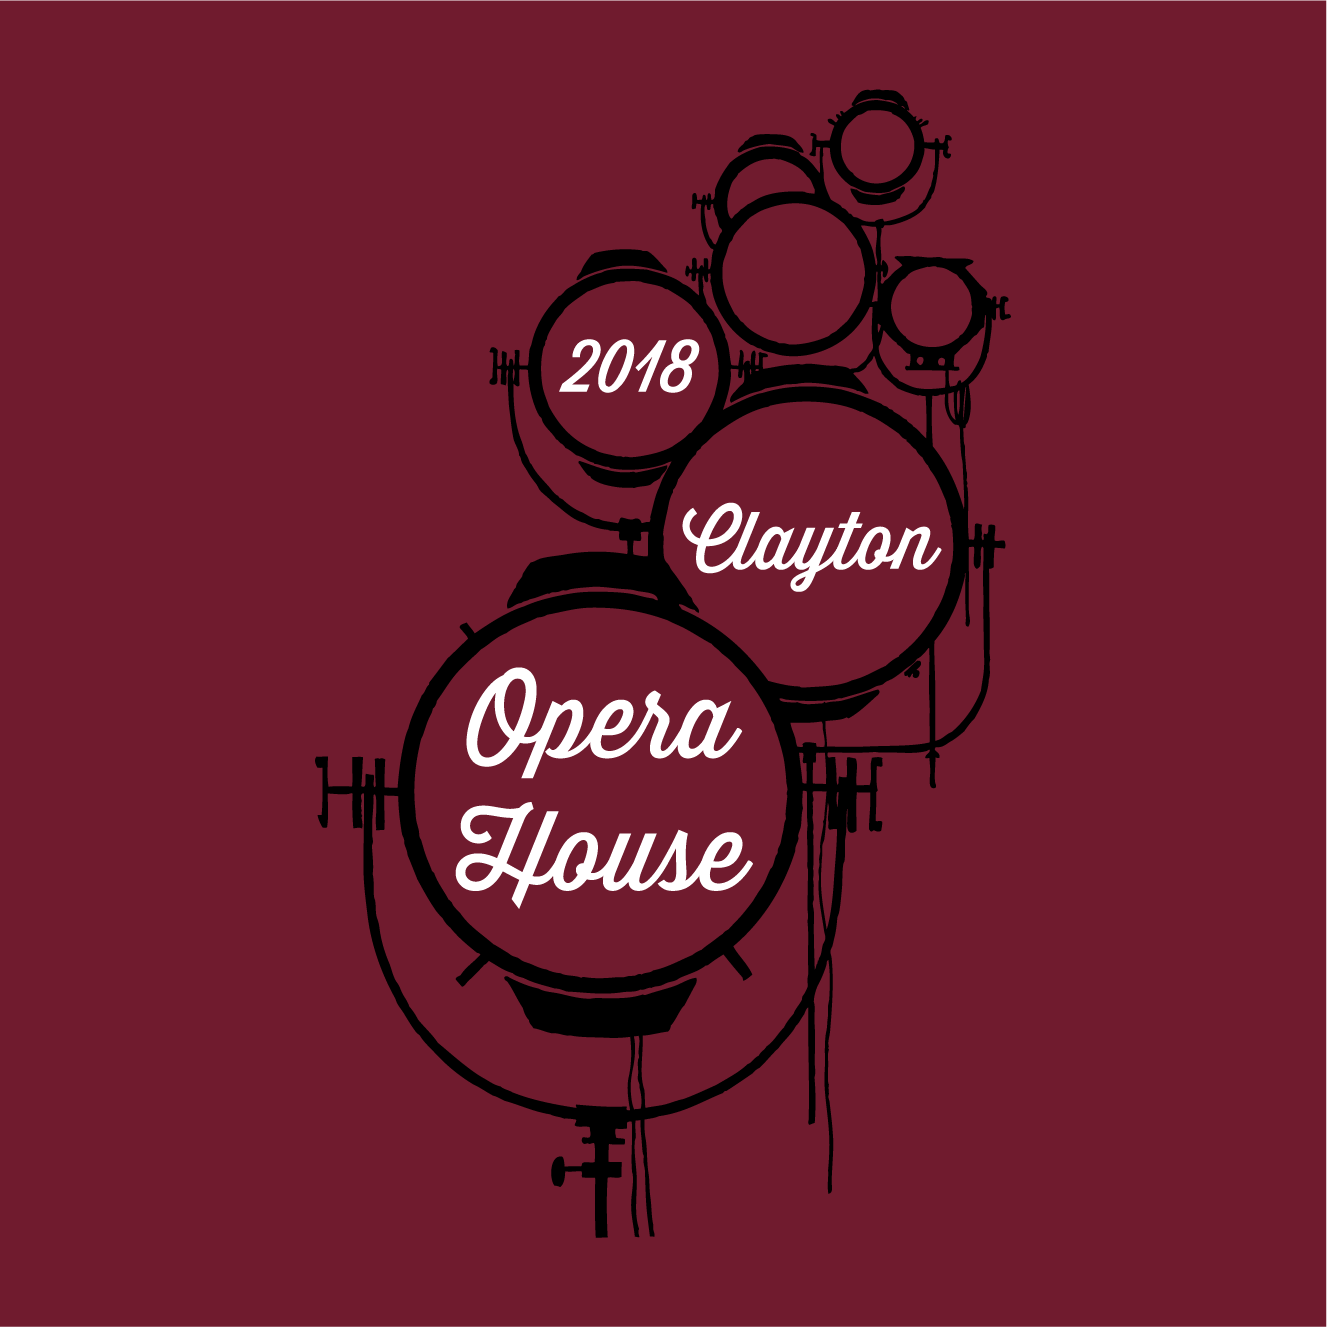 Clayton Opera House Phase II LED light project shirt design - zoomed